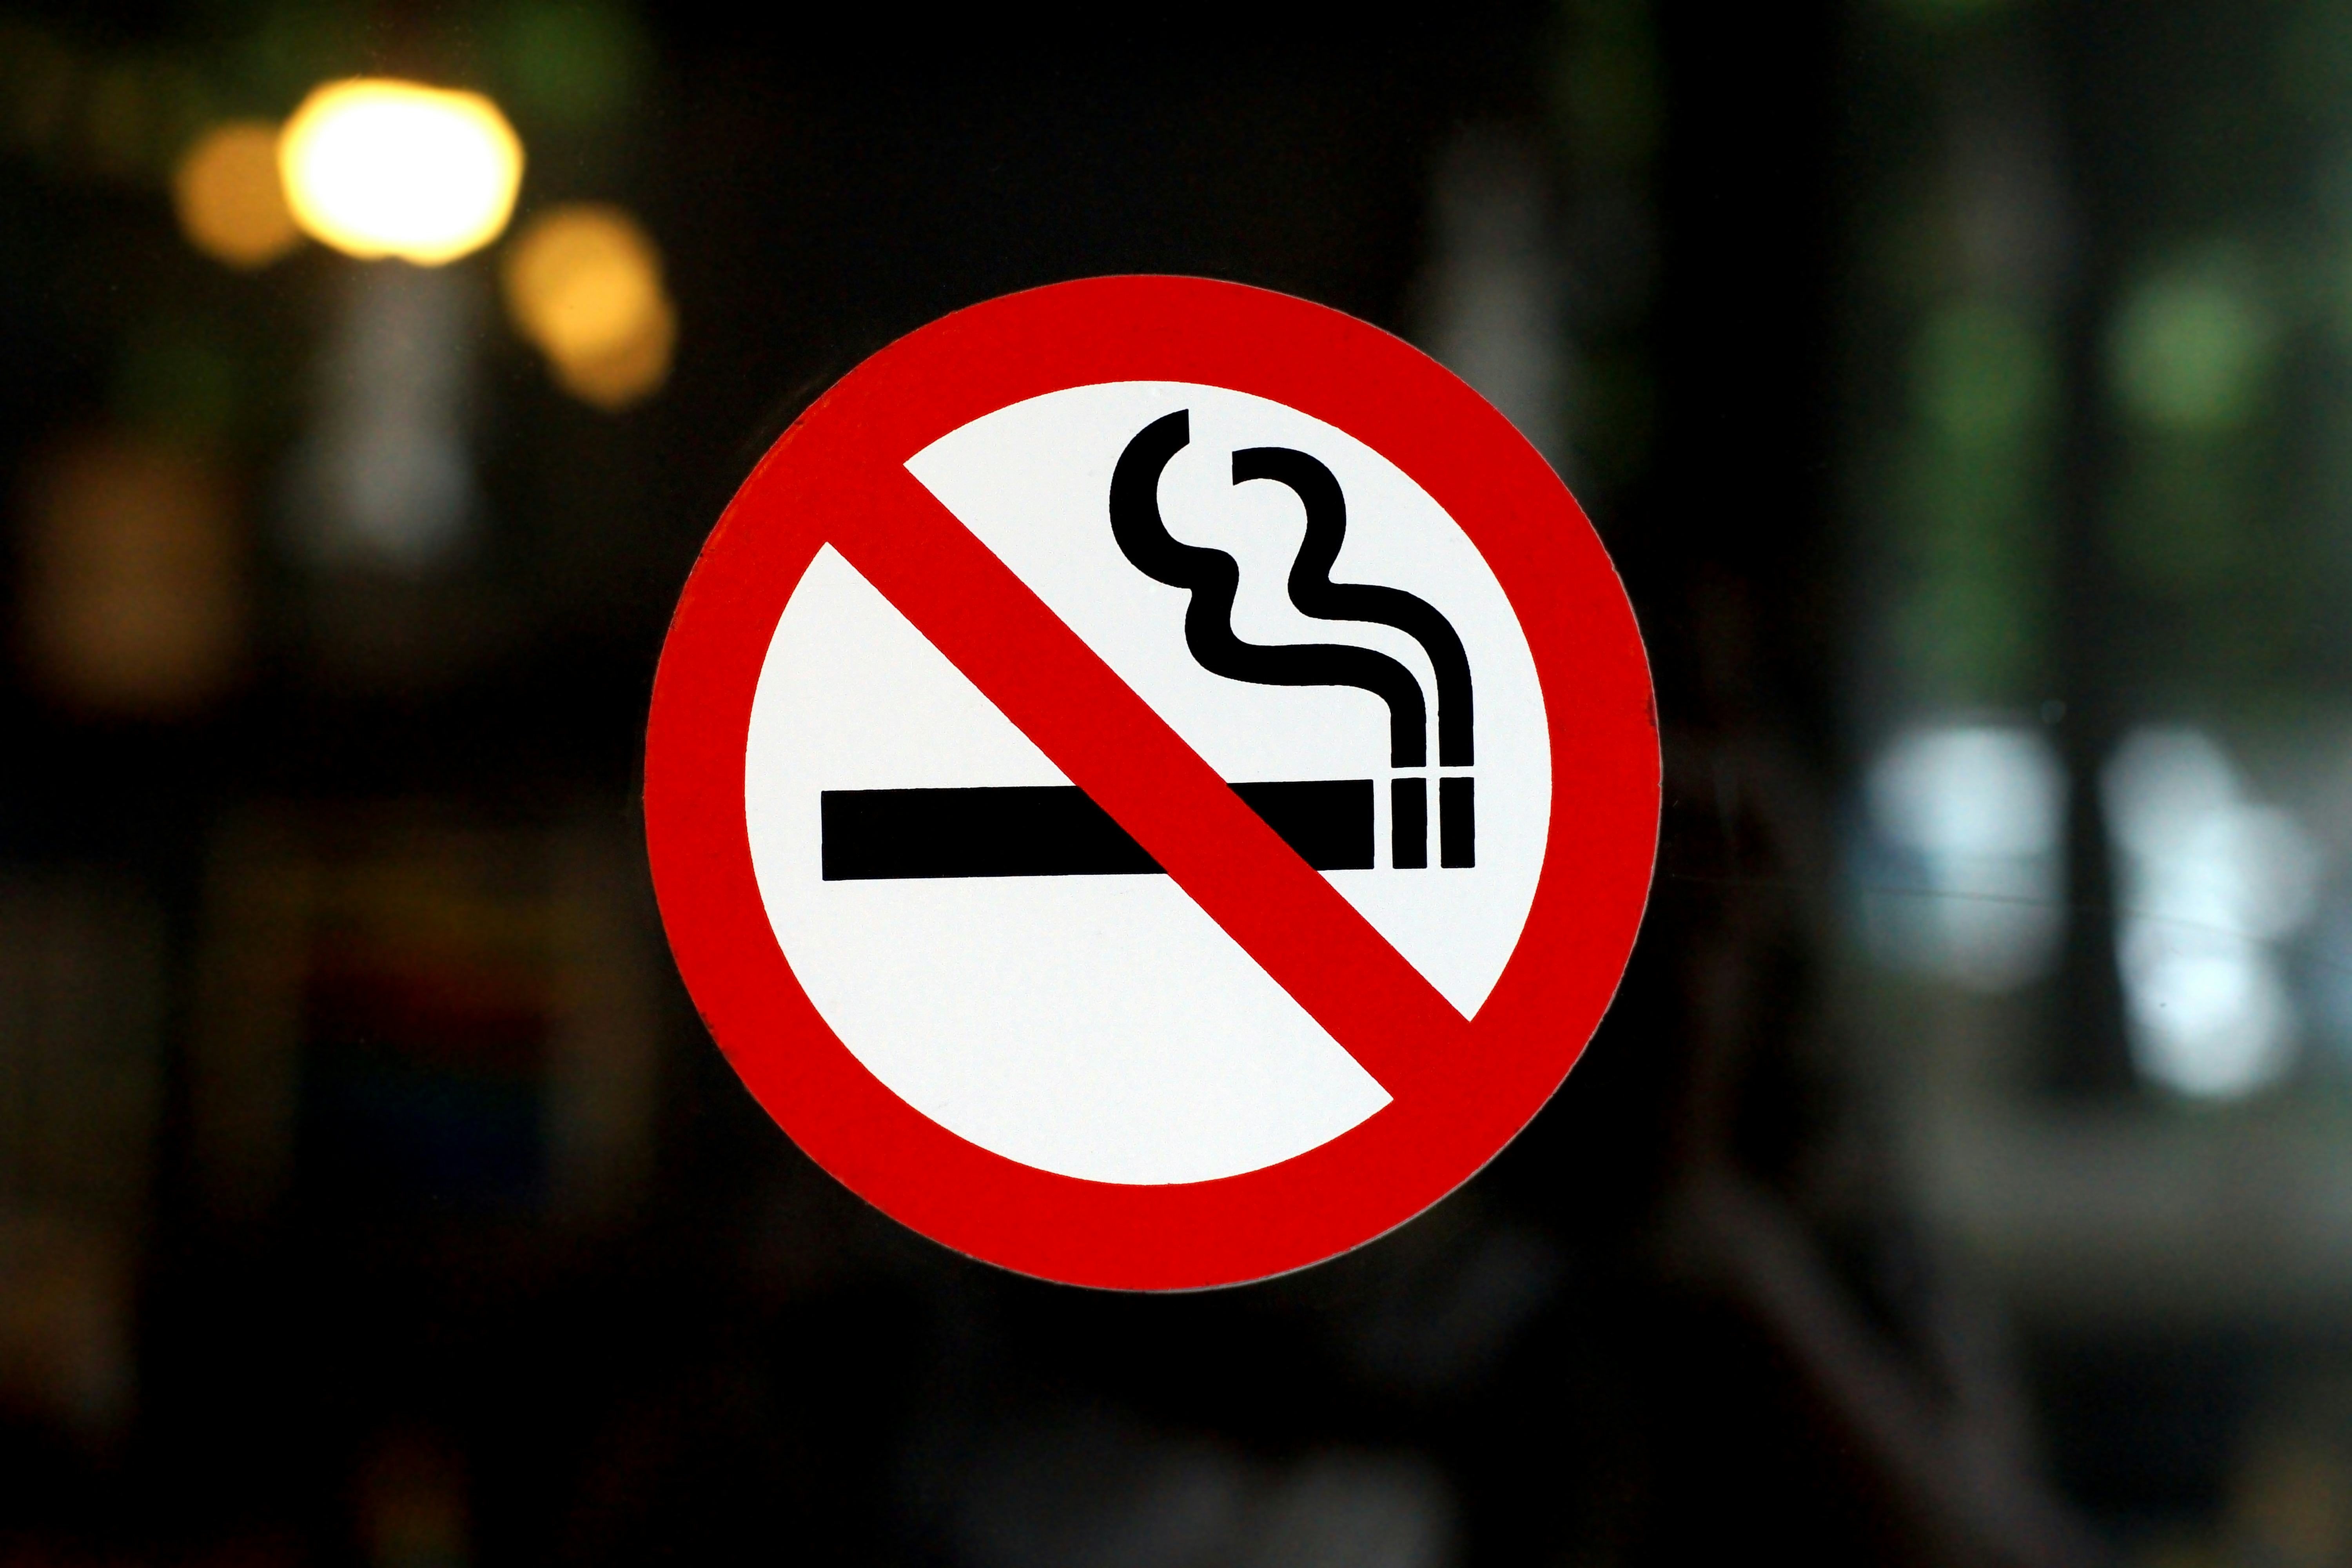 Verbod rookruimte in de horeca: hoe zit het met handhaving en financiële compensatie?